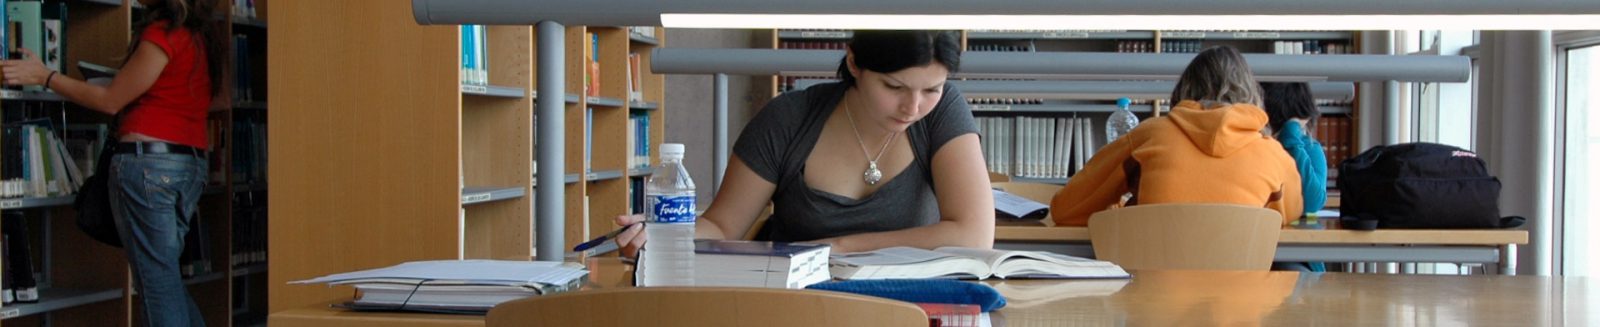 Vista del interior de una biblioteca luminosa con mujer estudiando en primer plano ante una mesa tomando notas ante libros. Al fondo, otras personas estudiando o de pie ante las estanterías.